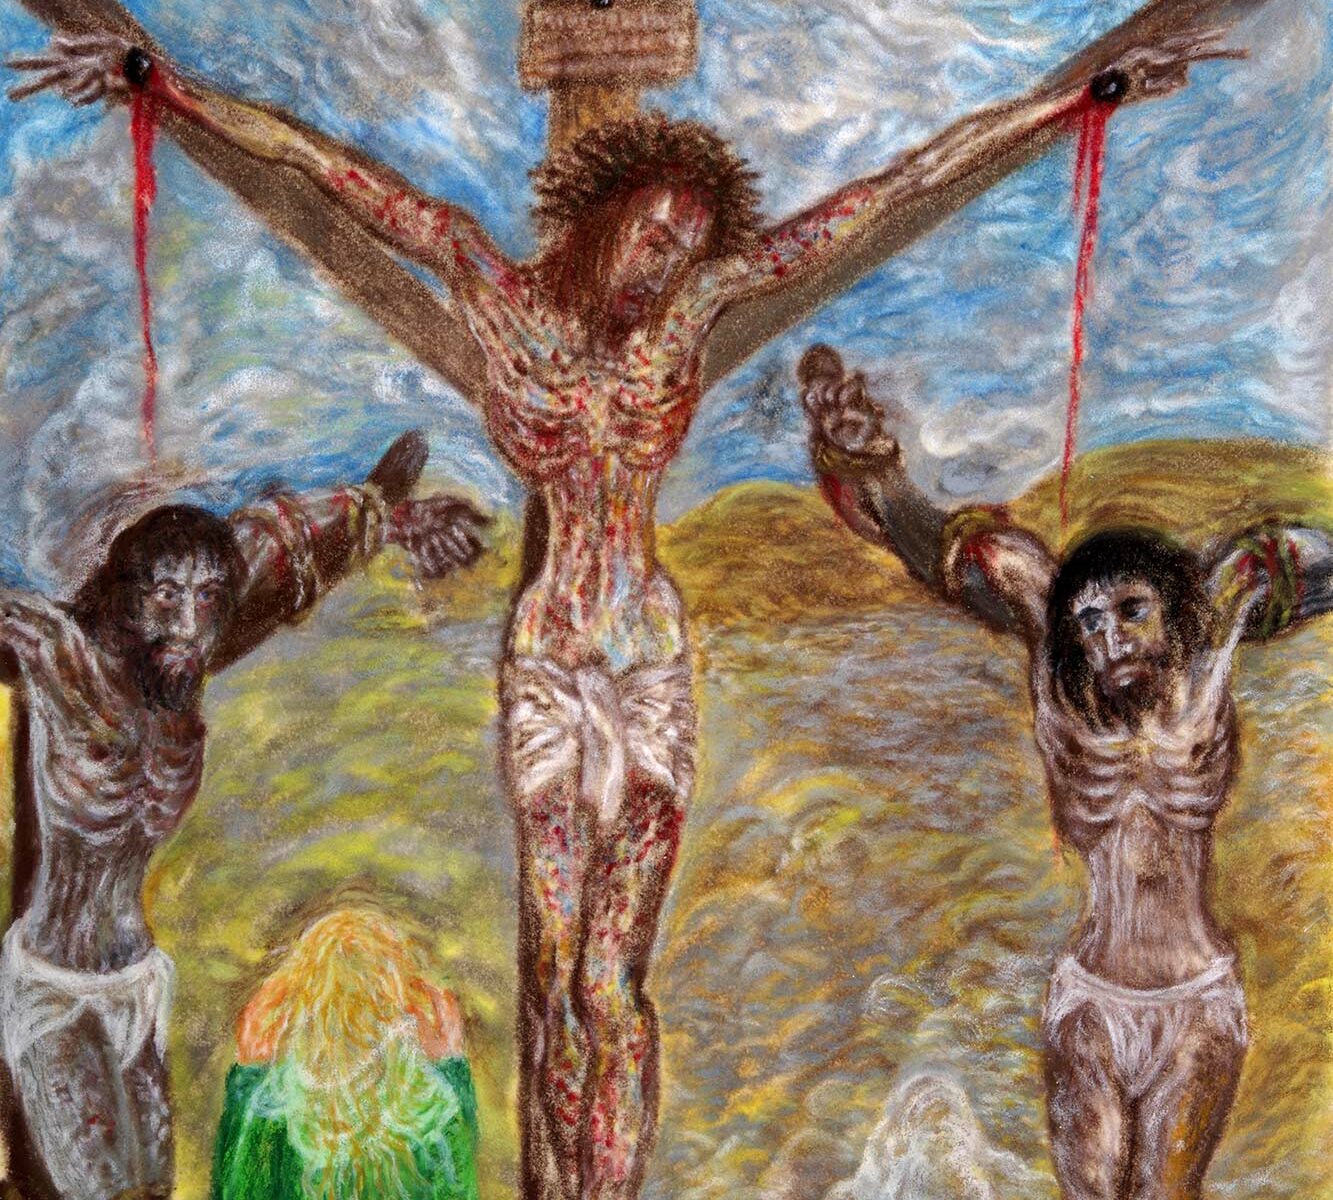 Gemälde: Kreuzigung nach A.K. Emmerich, 1984, Ölpastell